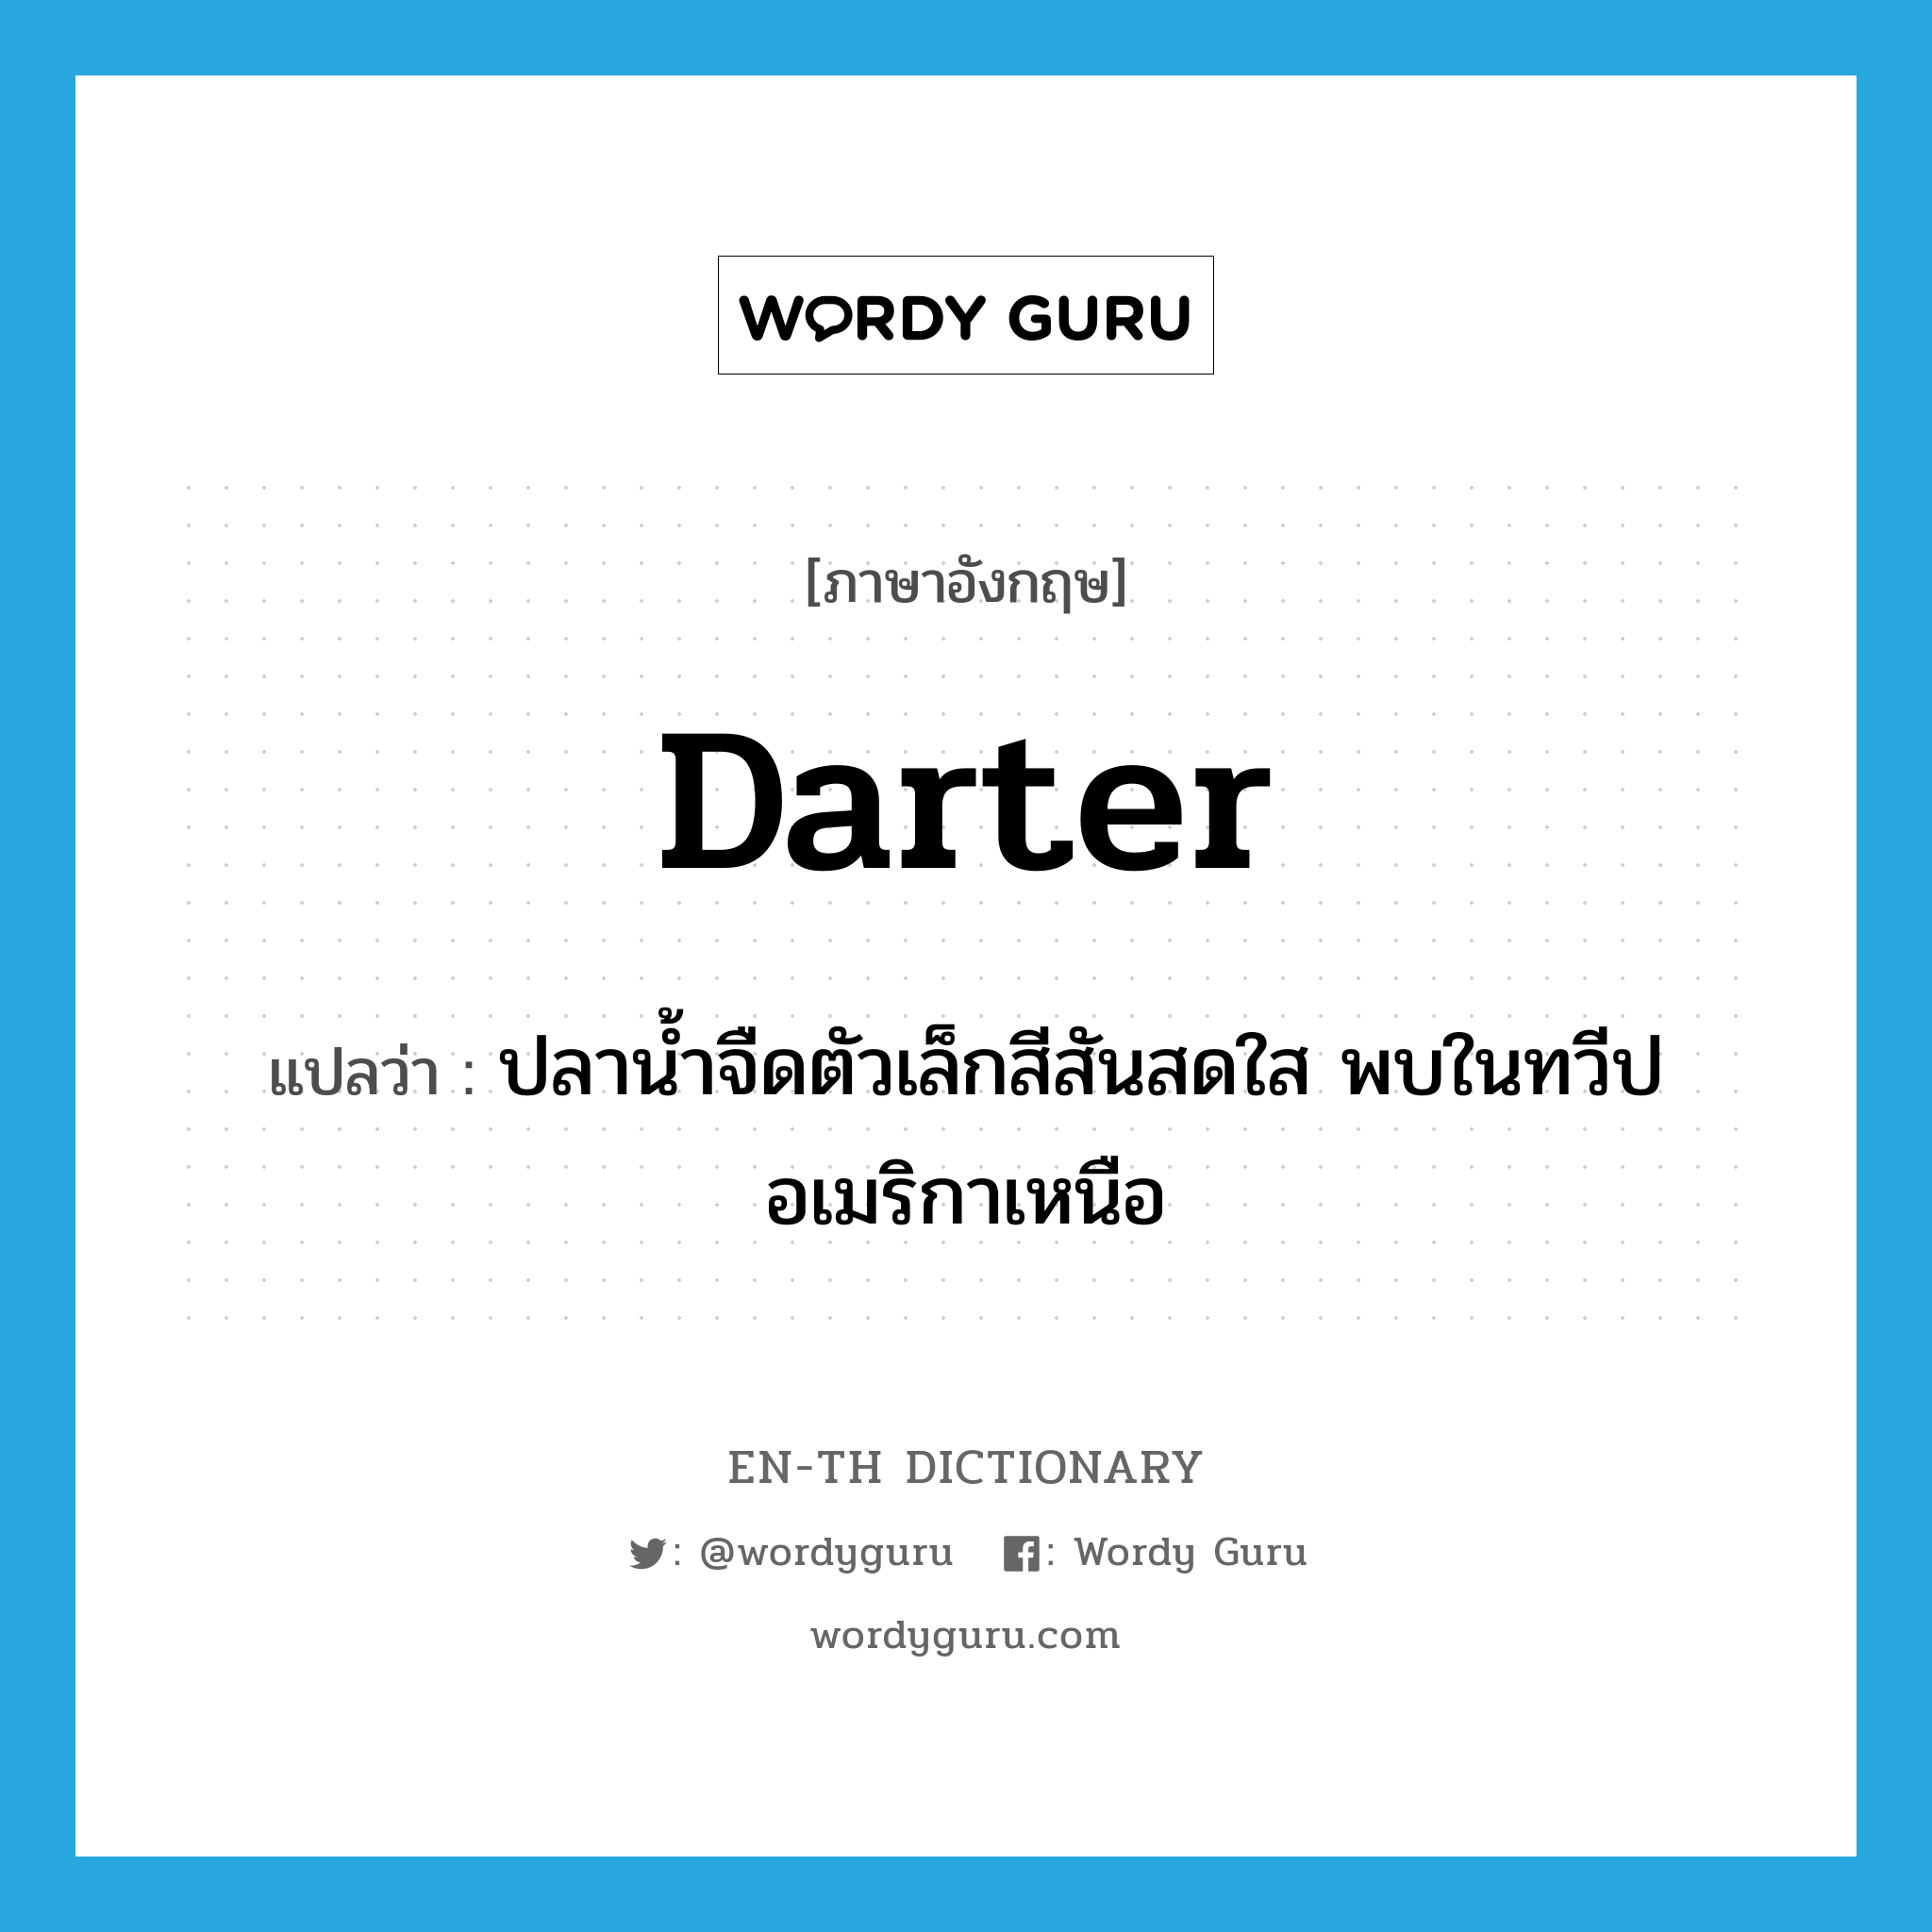 darter แปลว่า?, คำศัพท์ภาษาอังกฤษ darter แปลว่า ปลาน้ำจืดตัวเล็กสีสันสดใส พบในทวีปอเมริกาเหนือ ประเภท N หมวด N